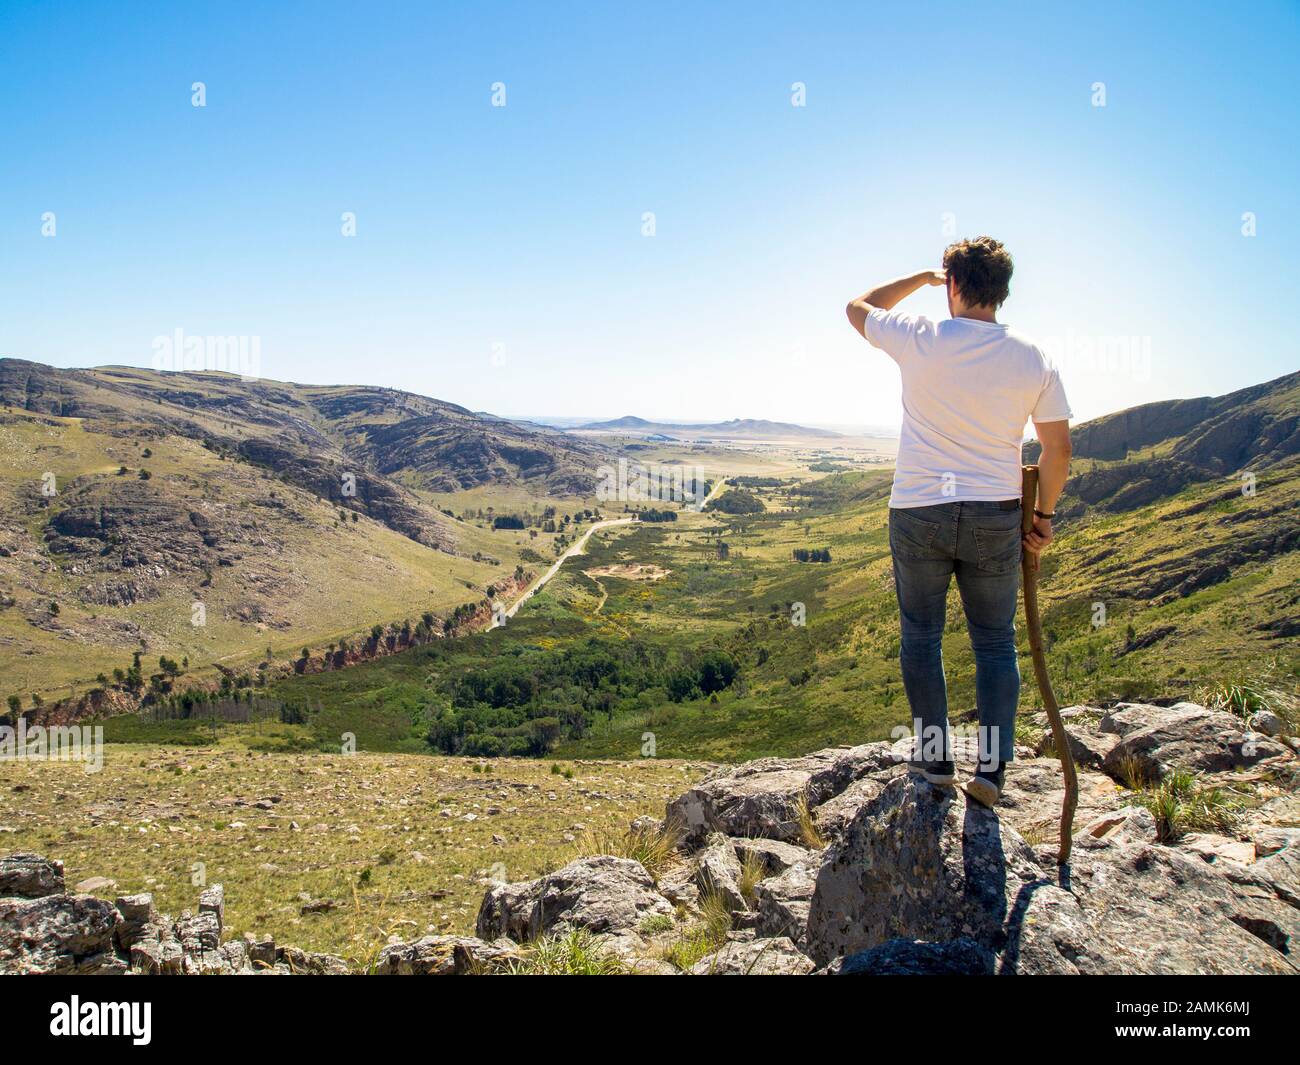 Young hiker looking at the view in Cerro Bahía Blanca, Sierra de la Ventana, Buenos Aires, Argentina. Stock Photo